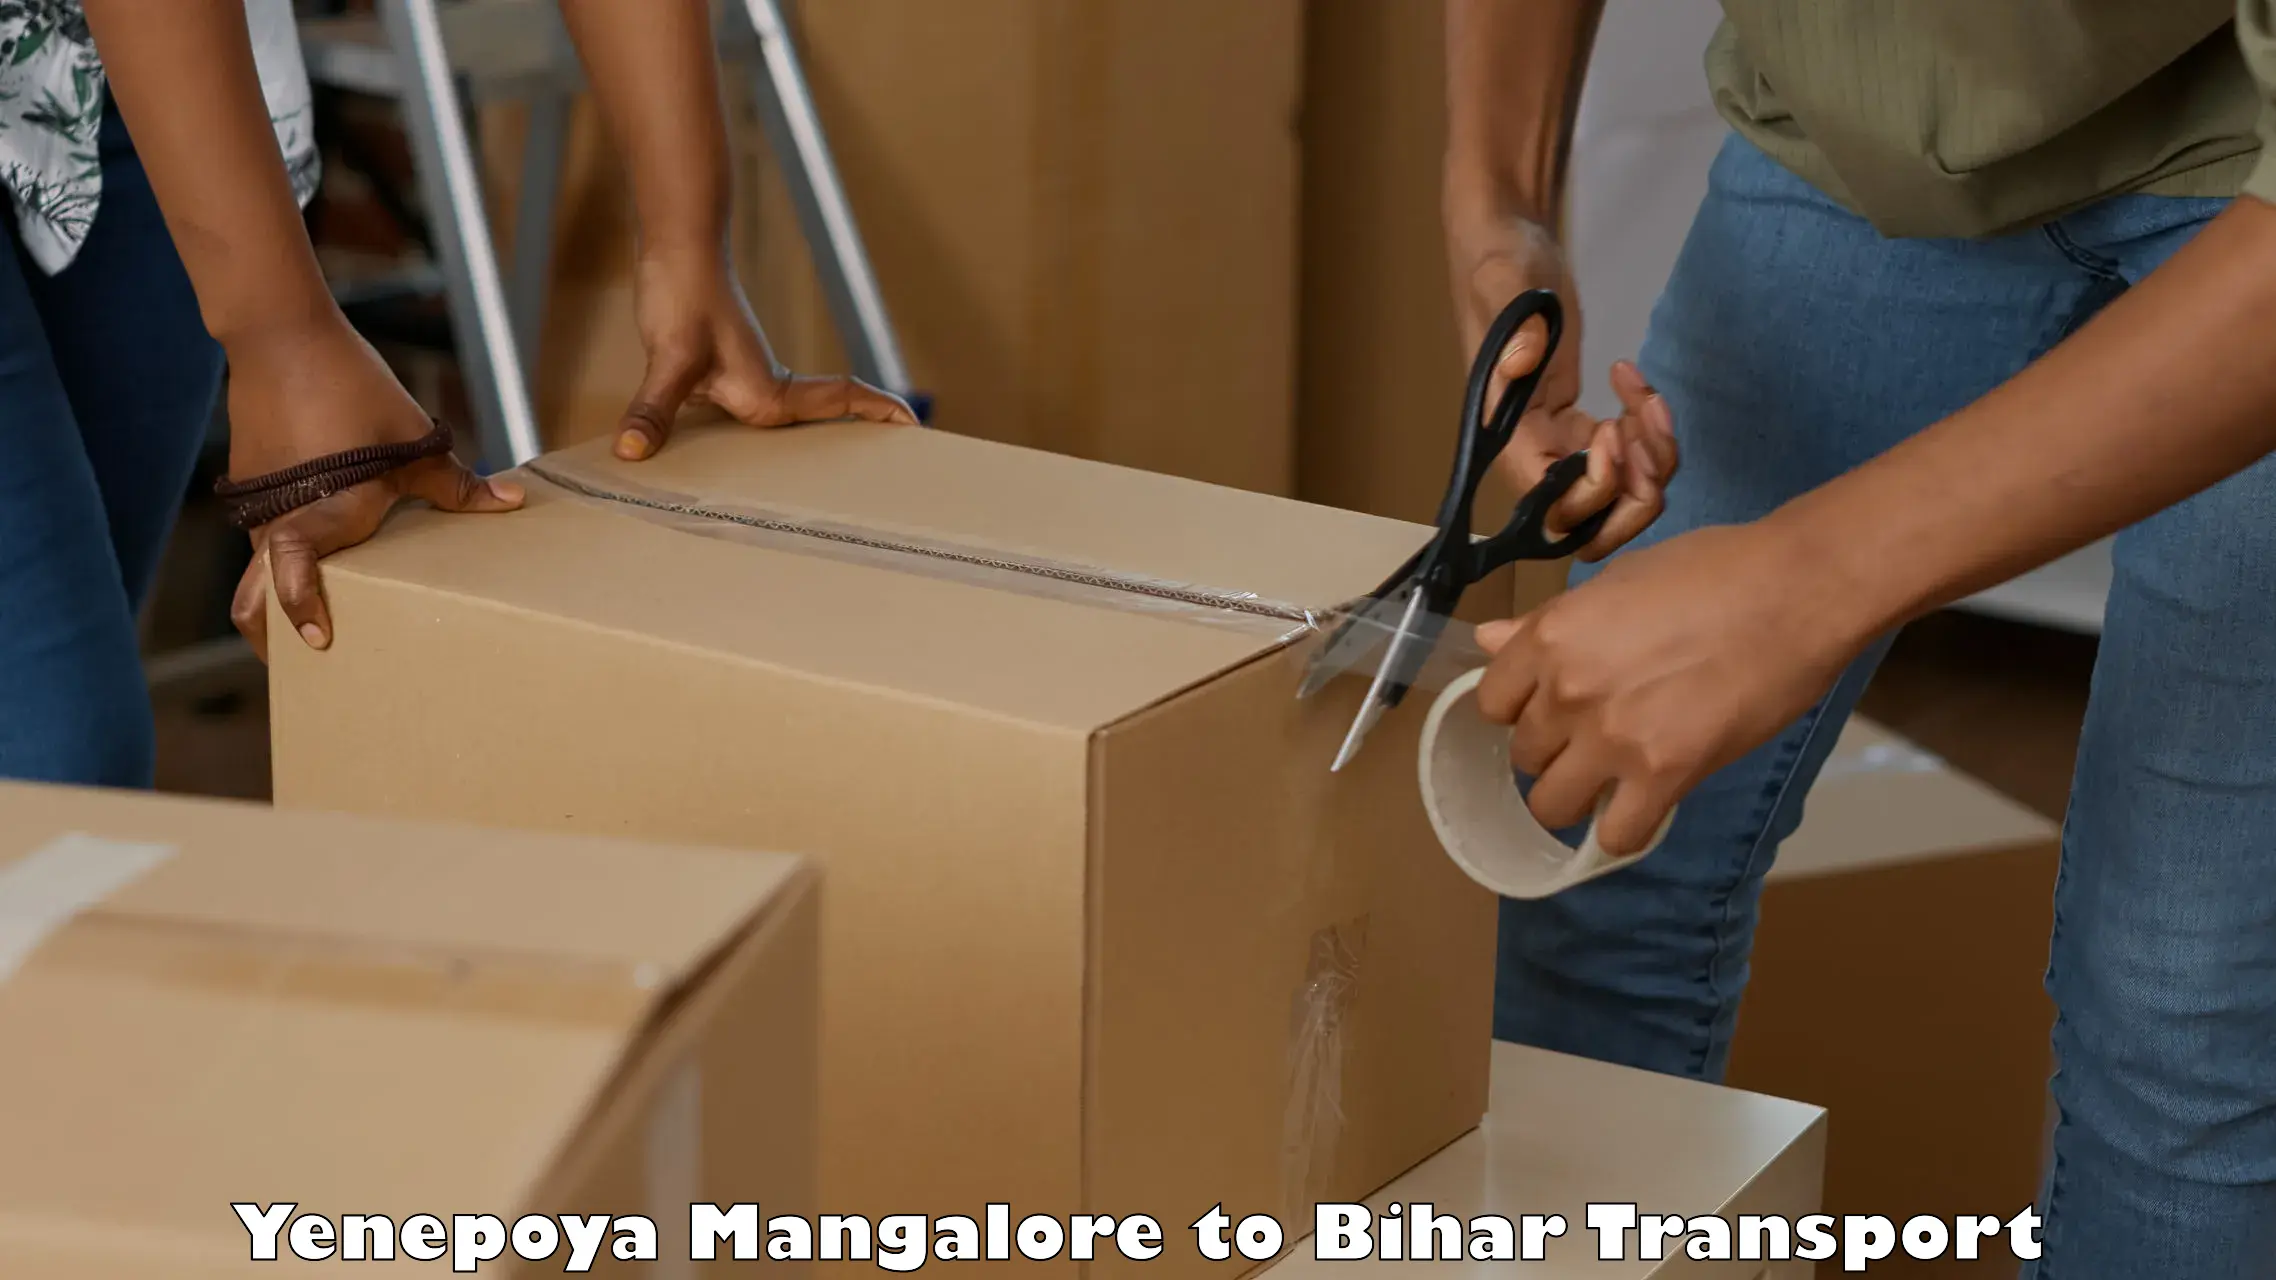 Transport in sharing Yenepoya Mangalore to Bihar